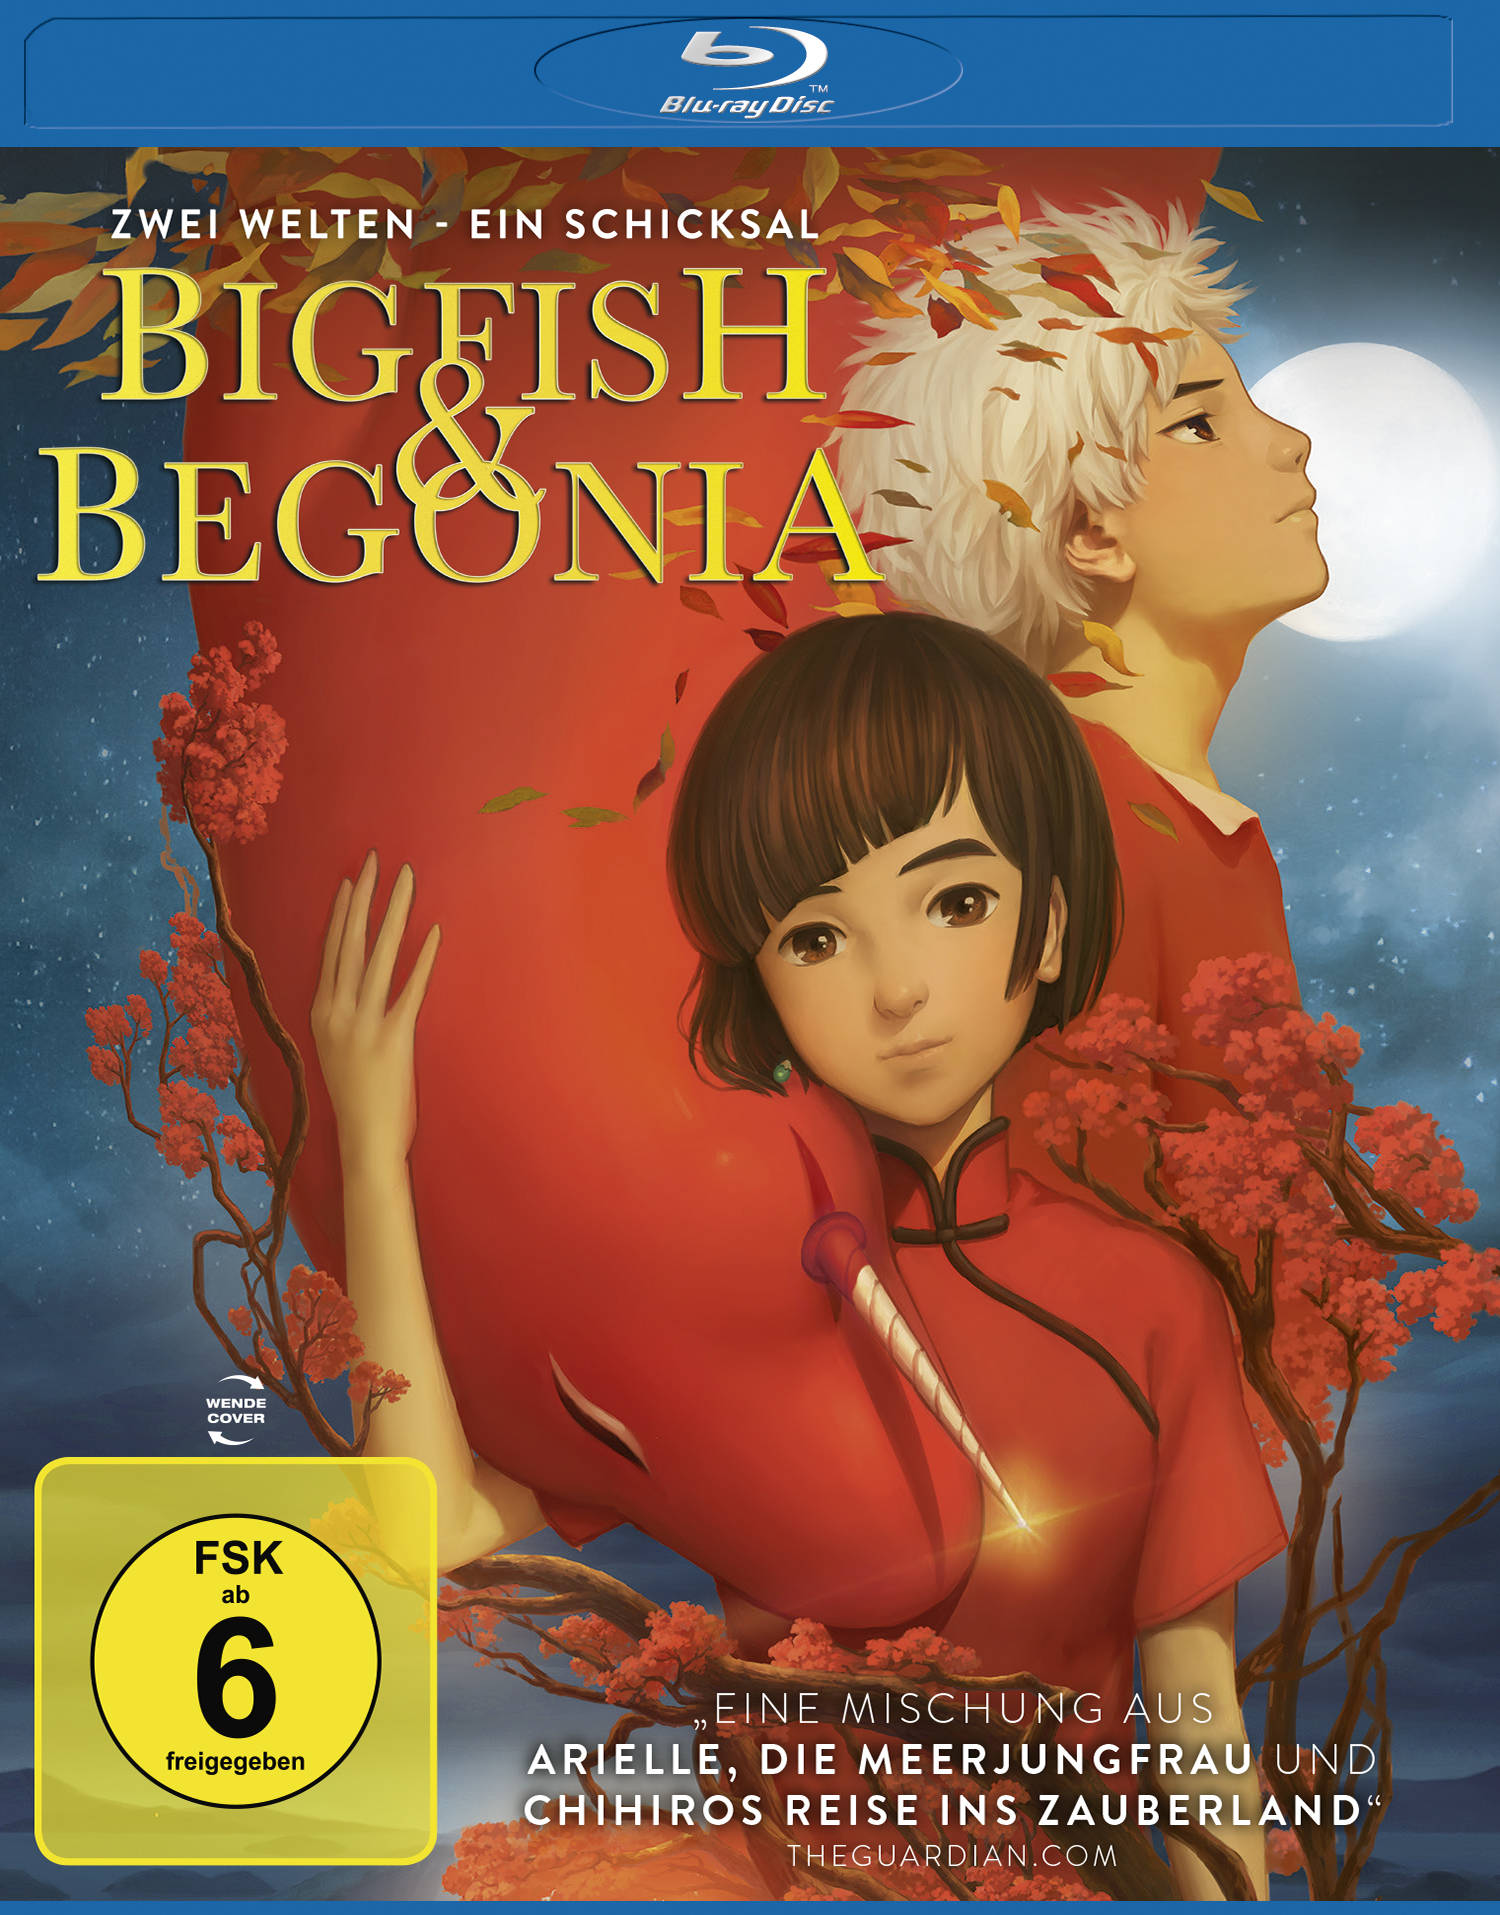 Blu-ray Ein Fish Zwei Big - - Begonia Schicksal & Welten